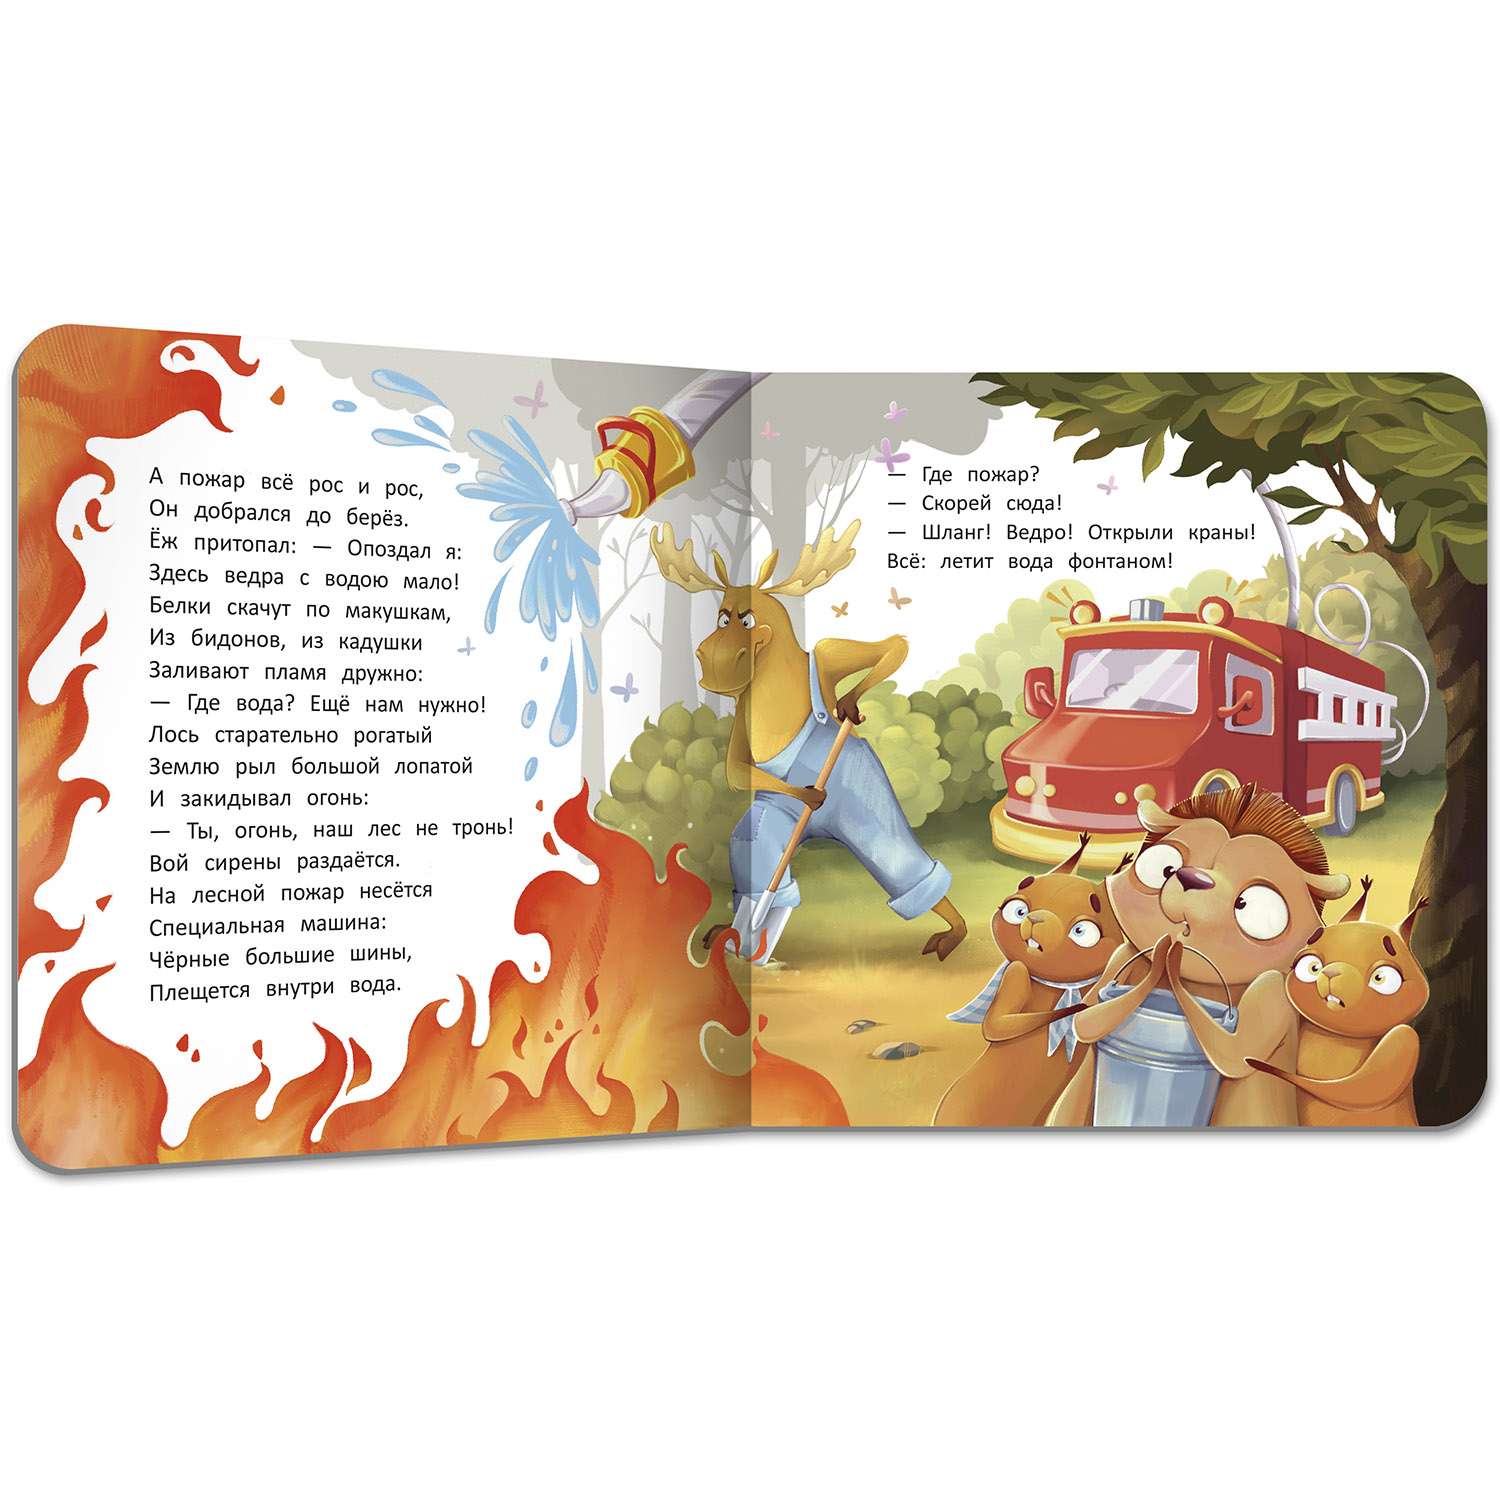 Книга Феникс Премьер  Пожар. Стихи для детей - фото 11